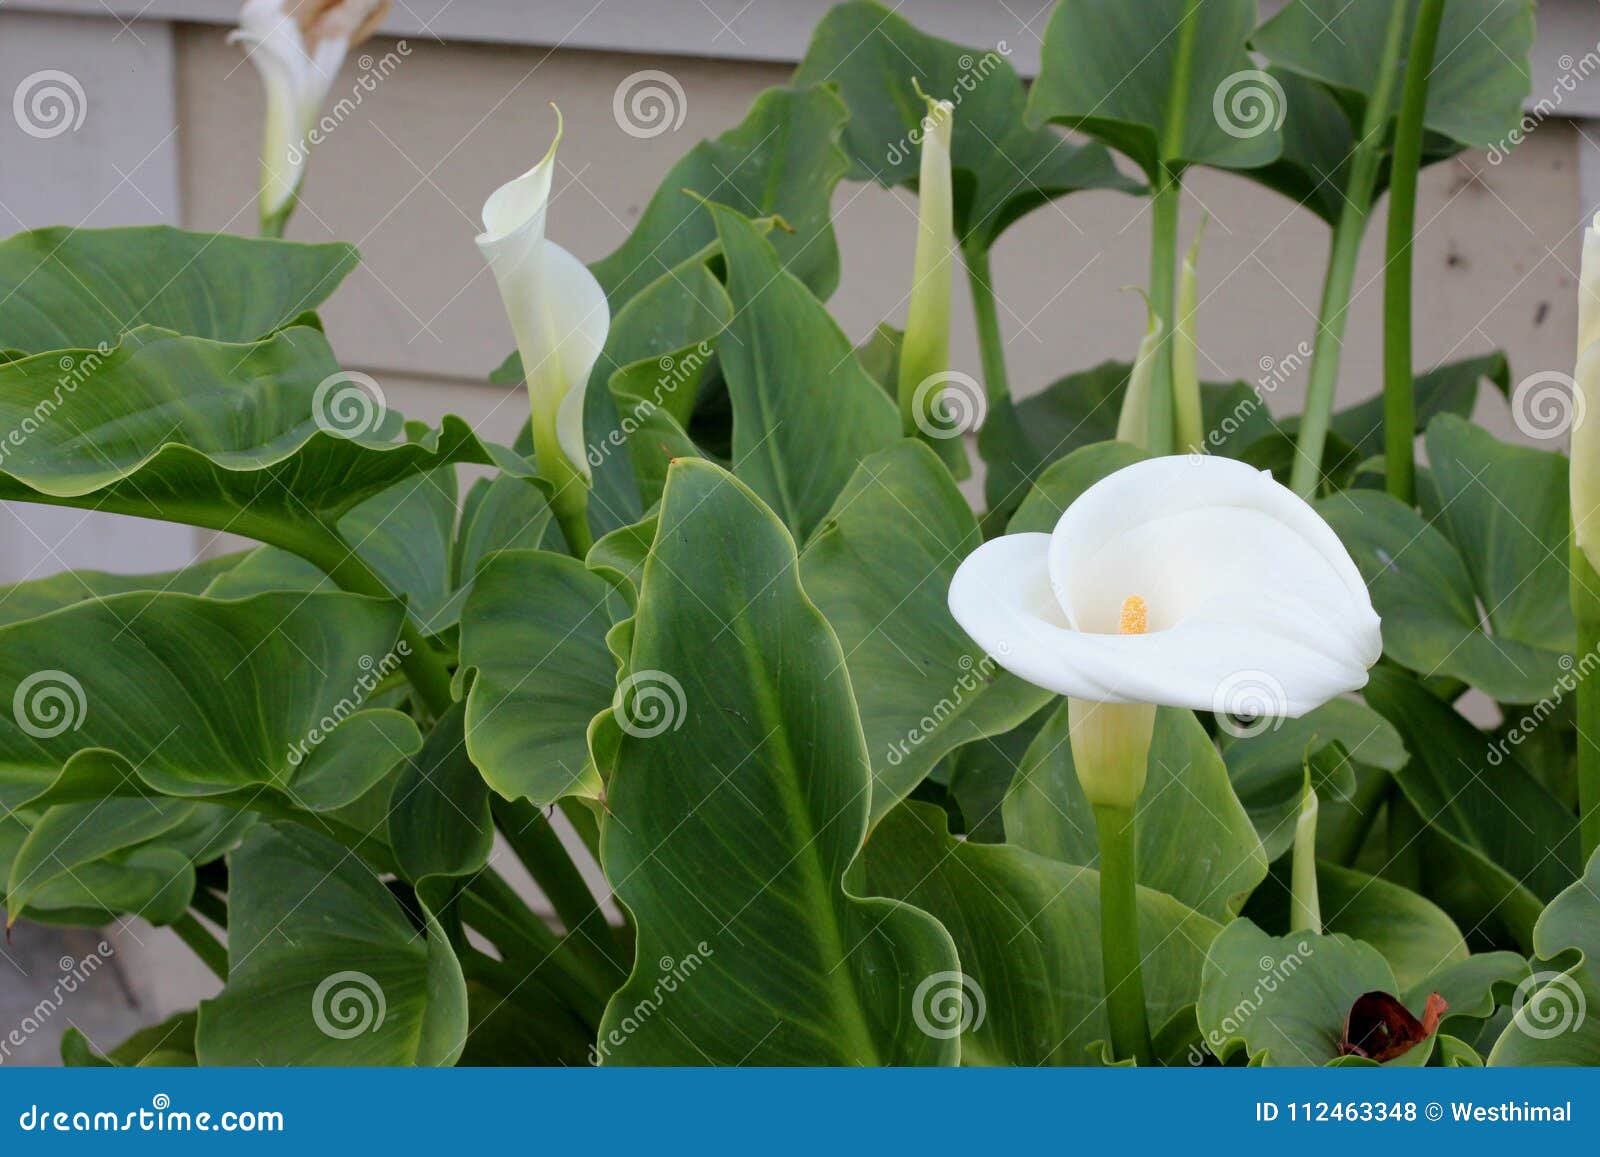 Calla Lily, Arum Lily, Zantedeschia Aethiopica Stock Photo   Image ...